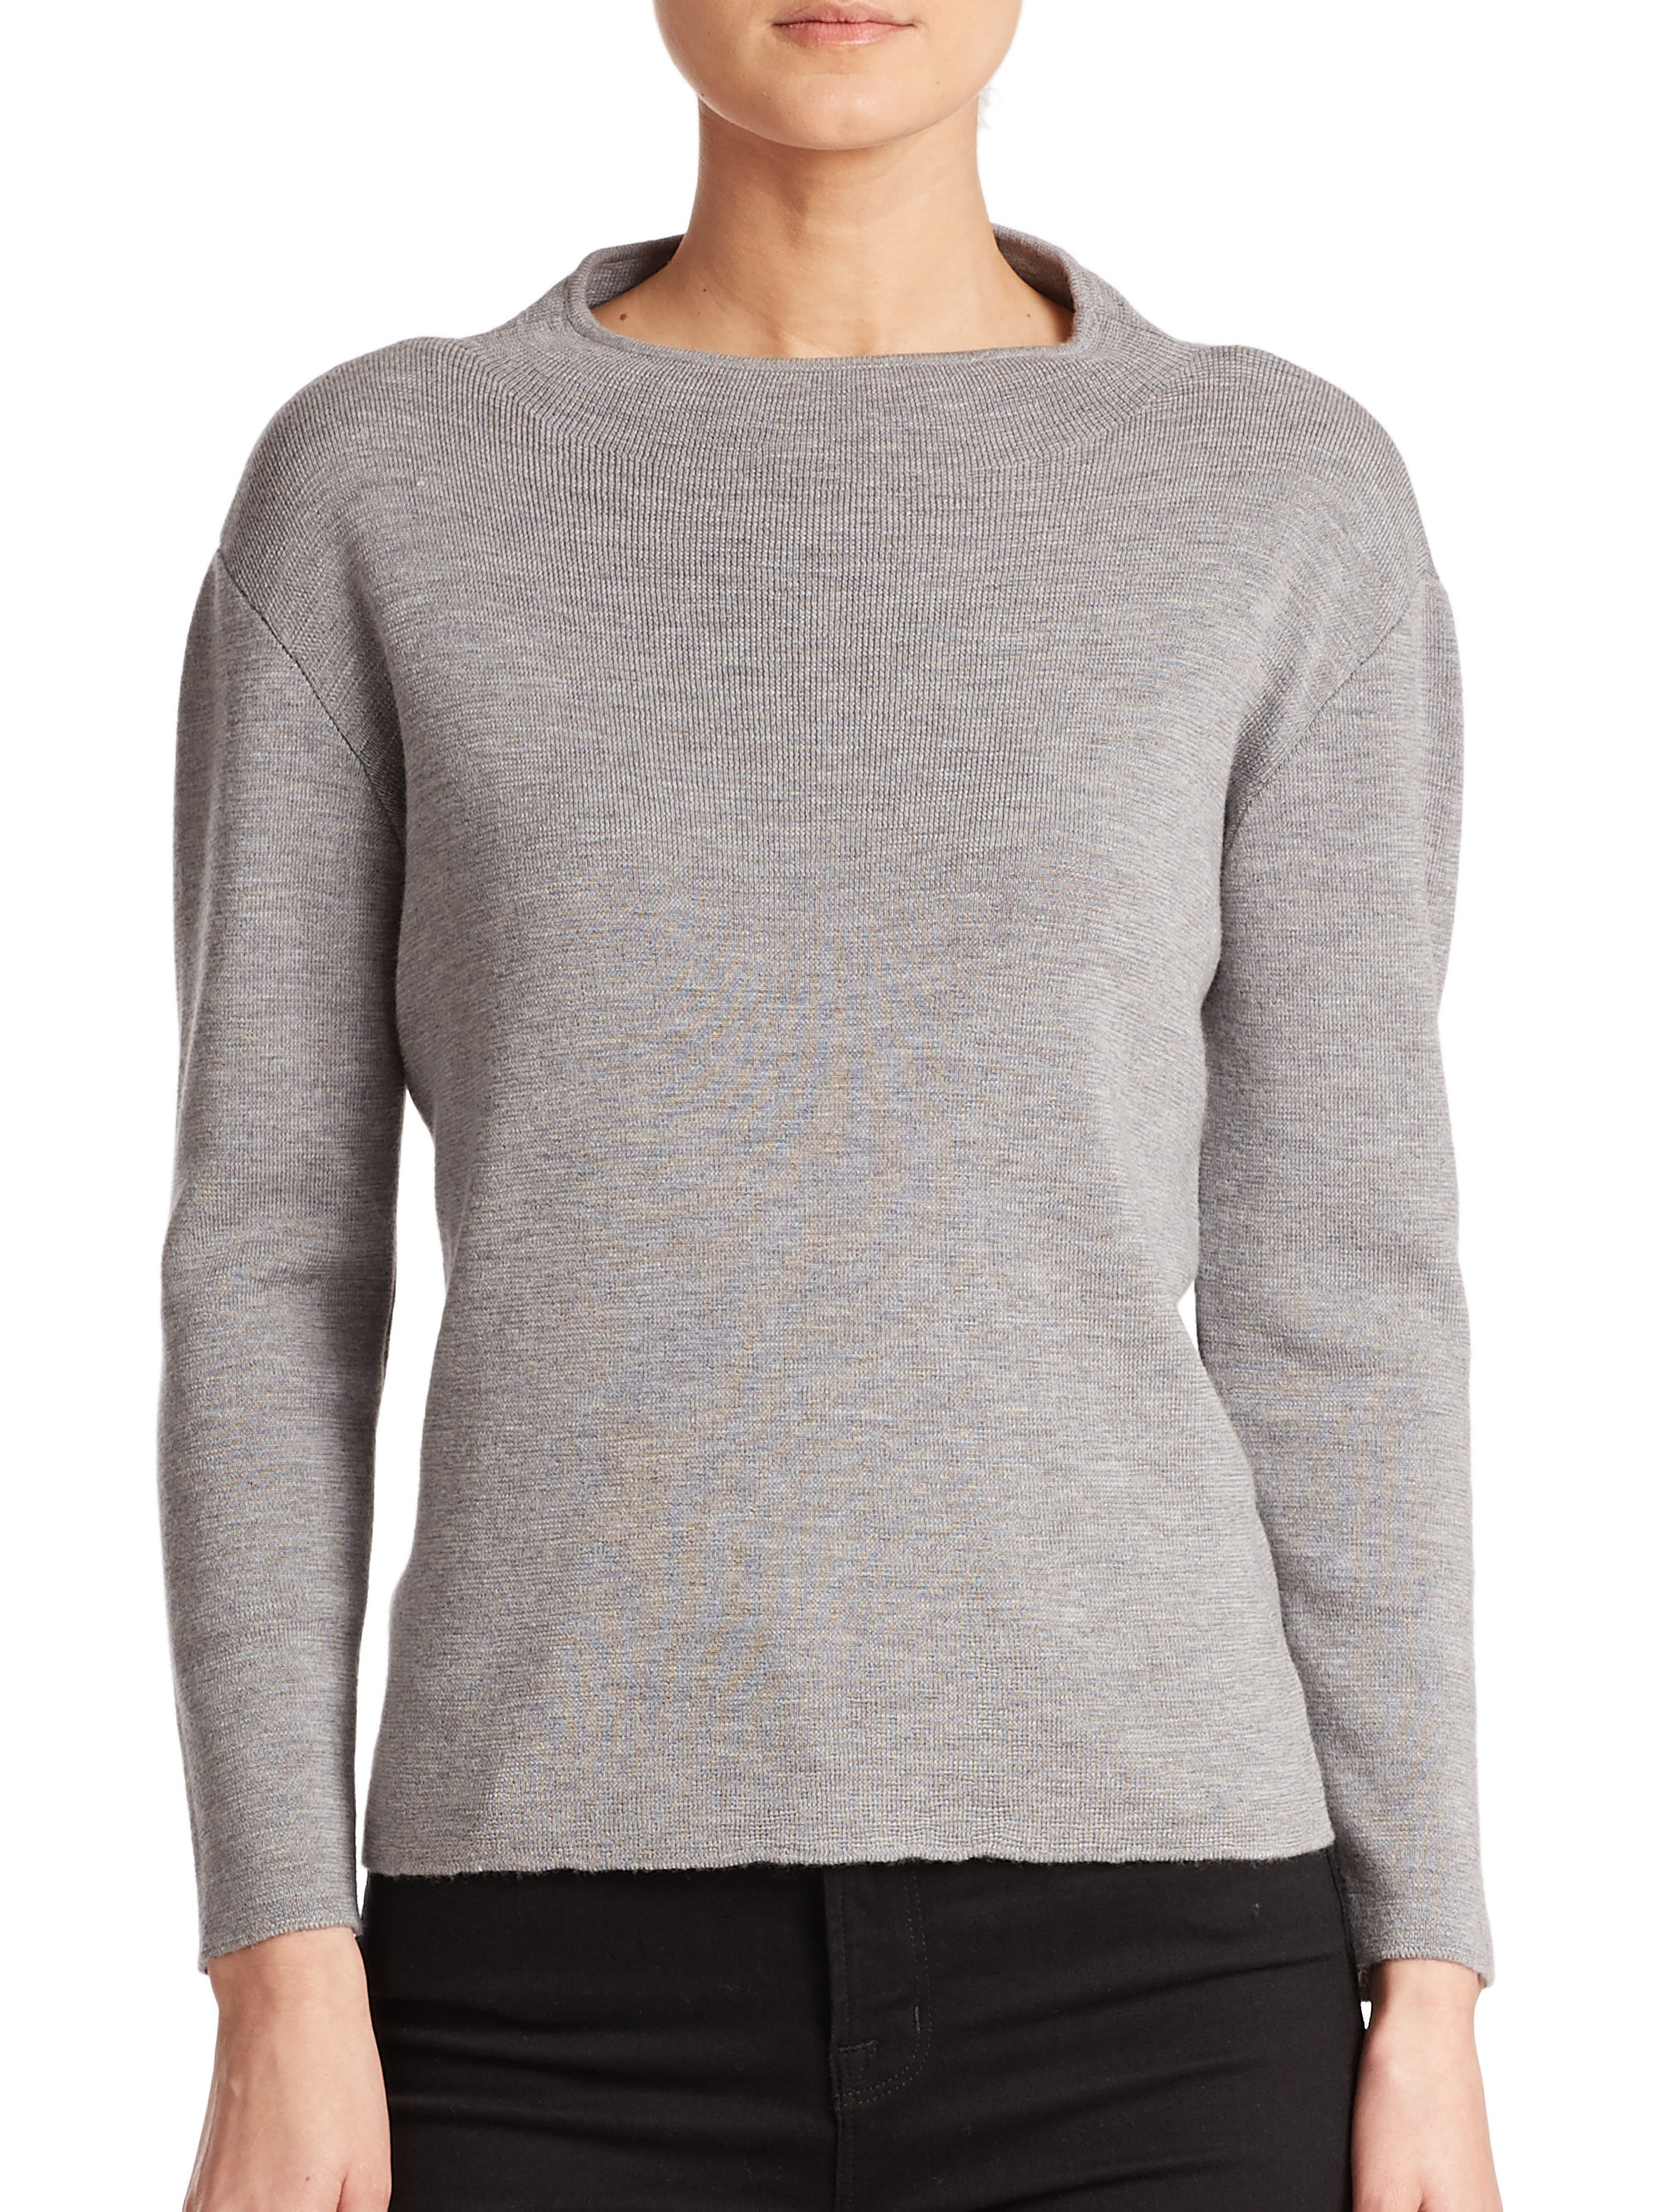 Lyst - Milly Merino Wool Funnelneck Sweater in Gray